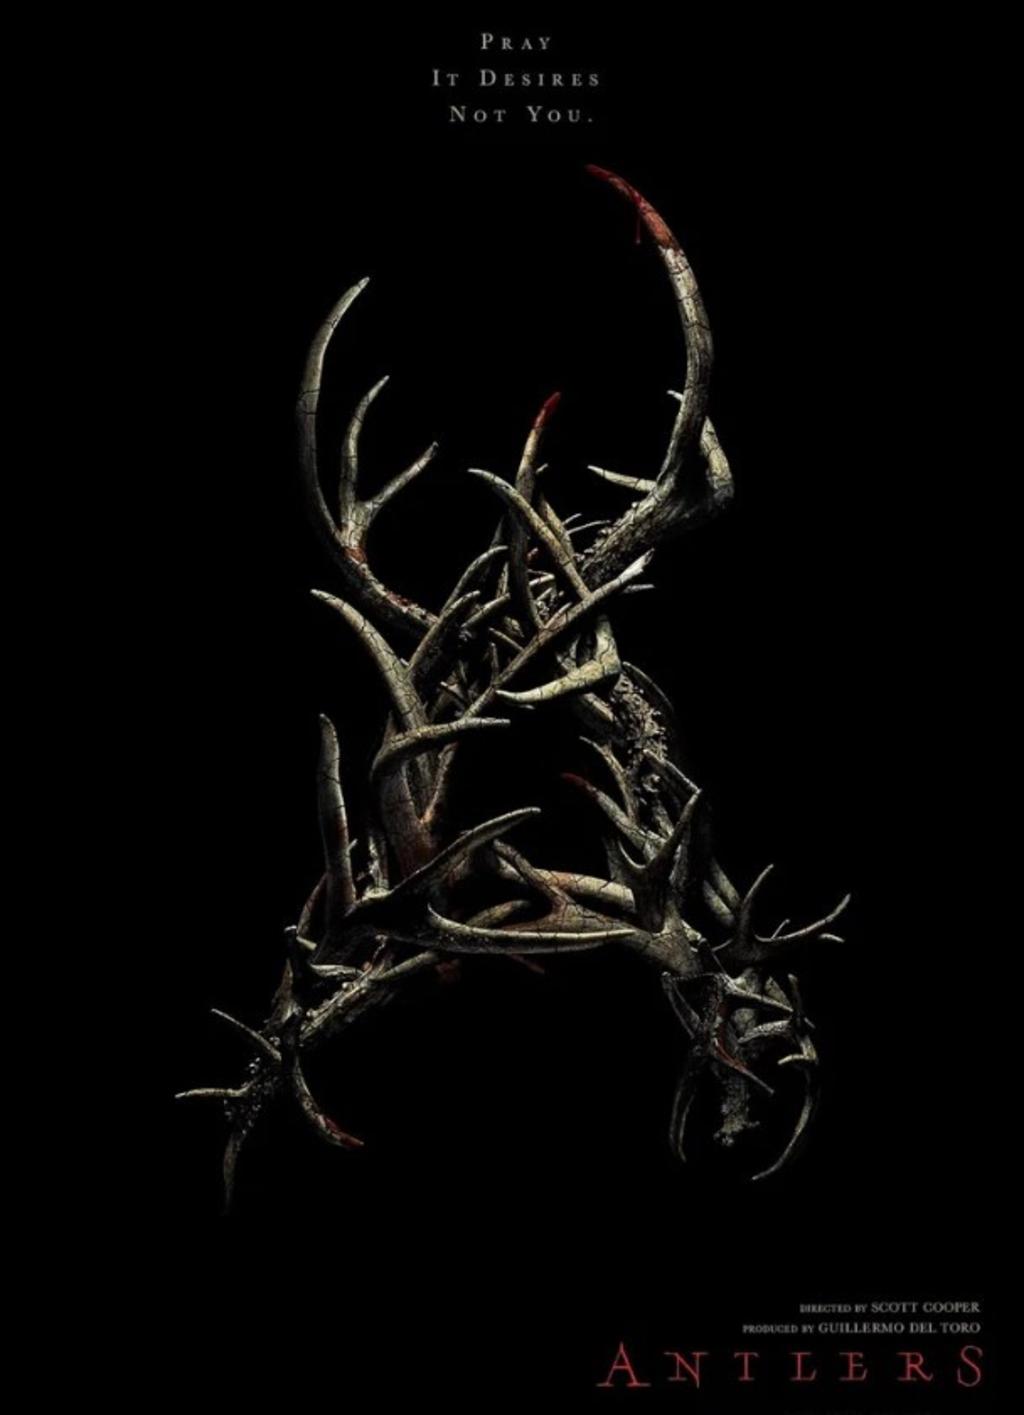 Antlers, cinta de terror y misterio producida por Guillermo Del Toro